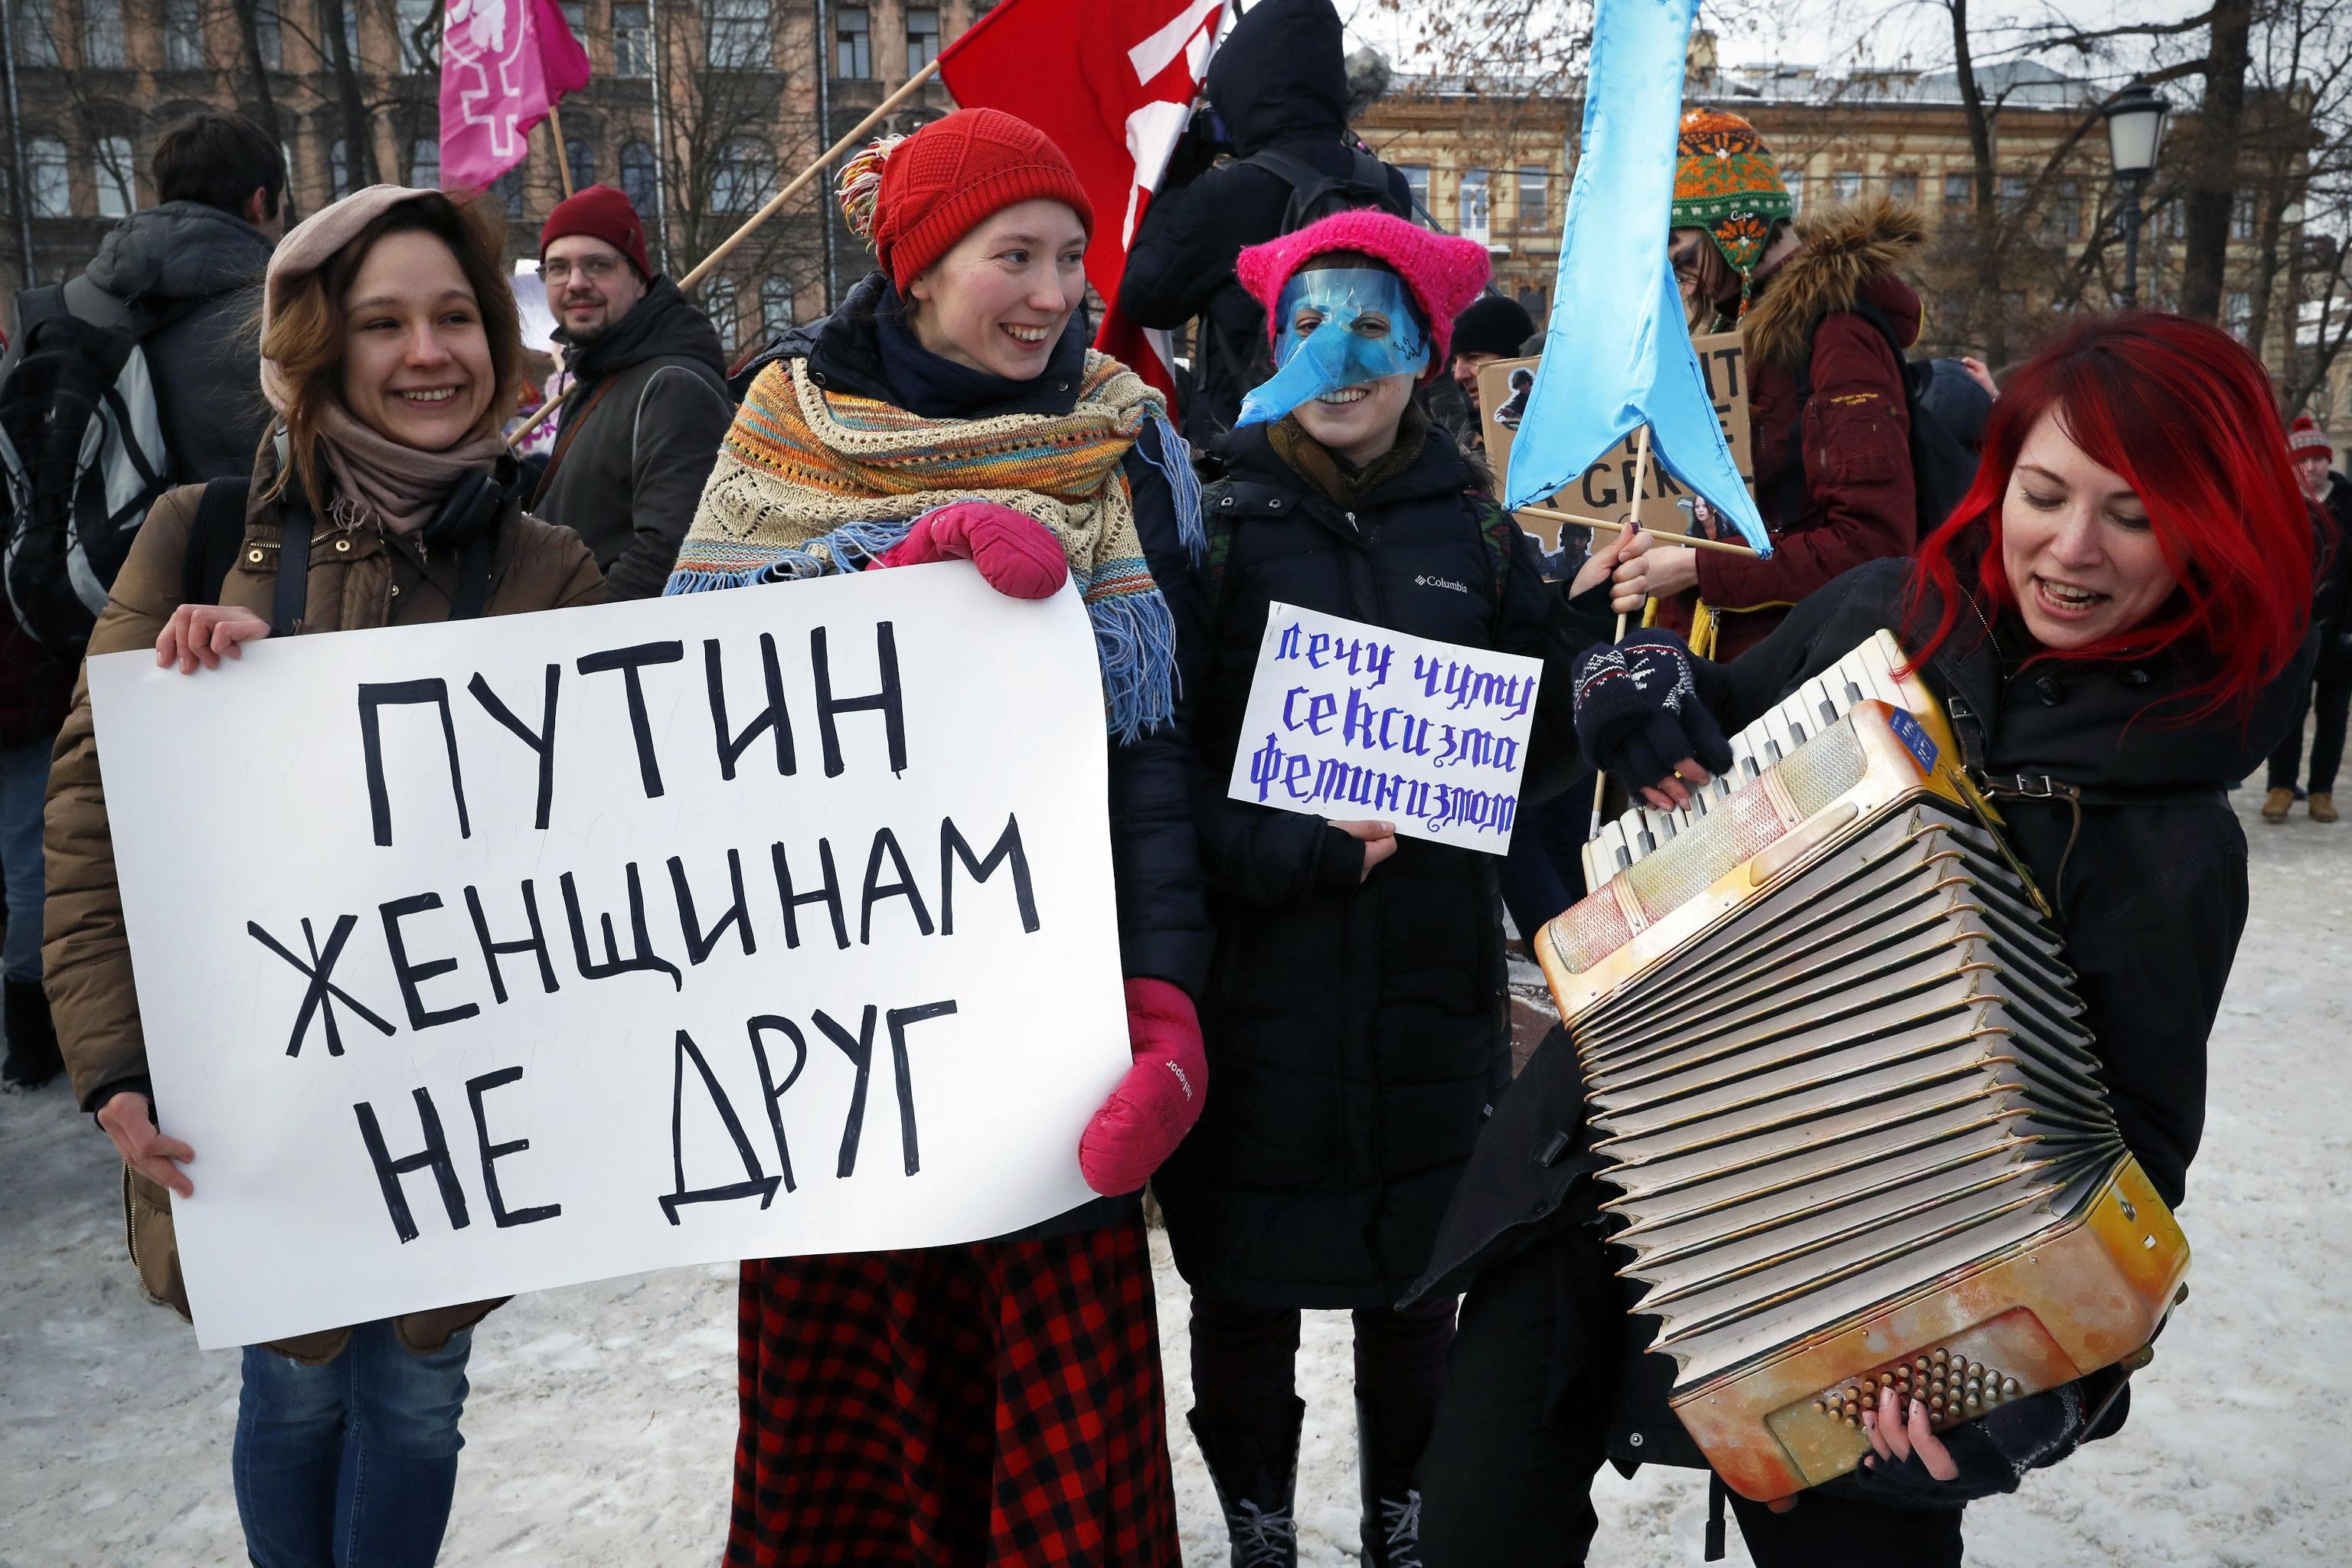 Proteste anche a San Pietroburgo. Negli ultimi anni il tema dei diritti civili e ruolo della donna è diventato di tragica attualità fin dalle rivolte delle Pussy Riot